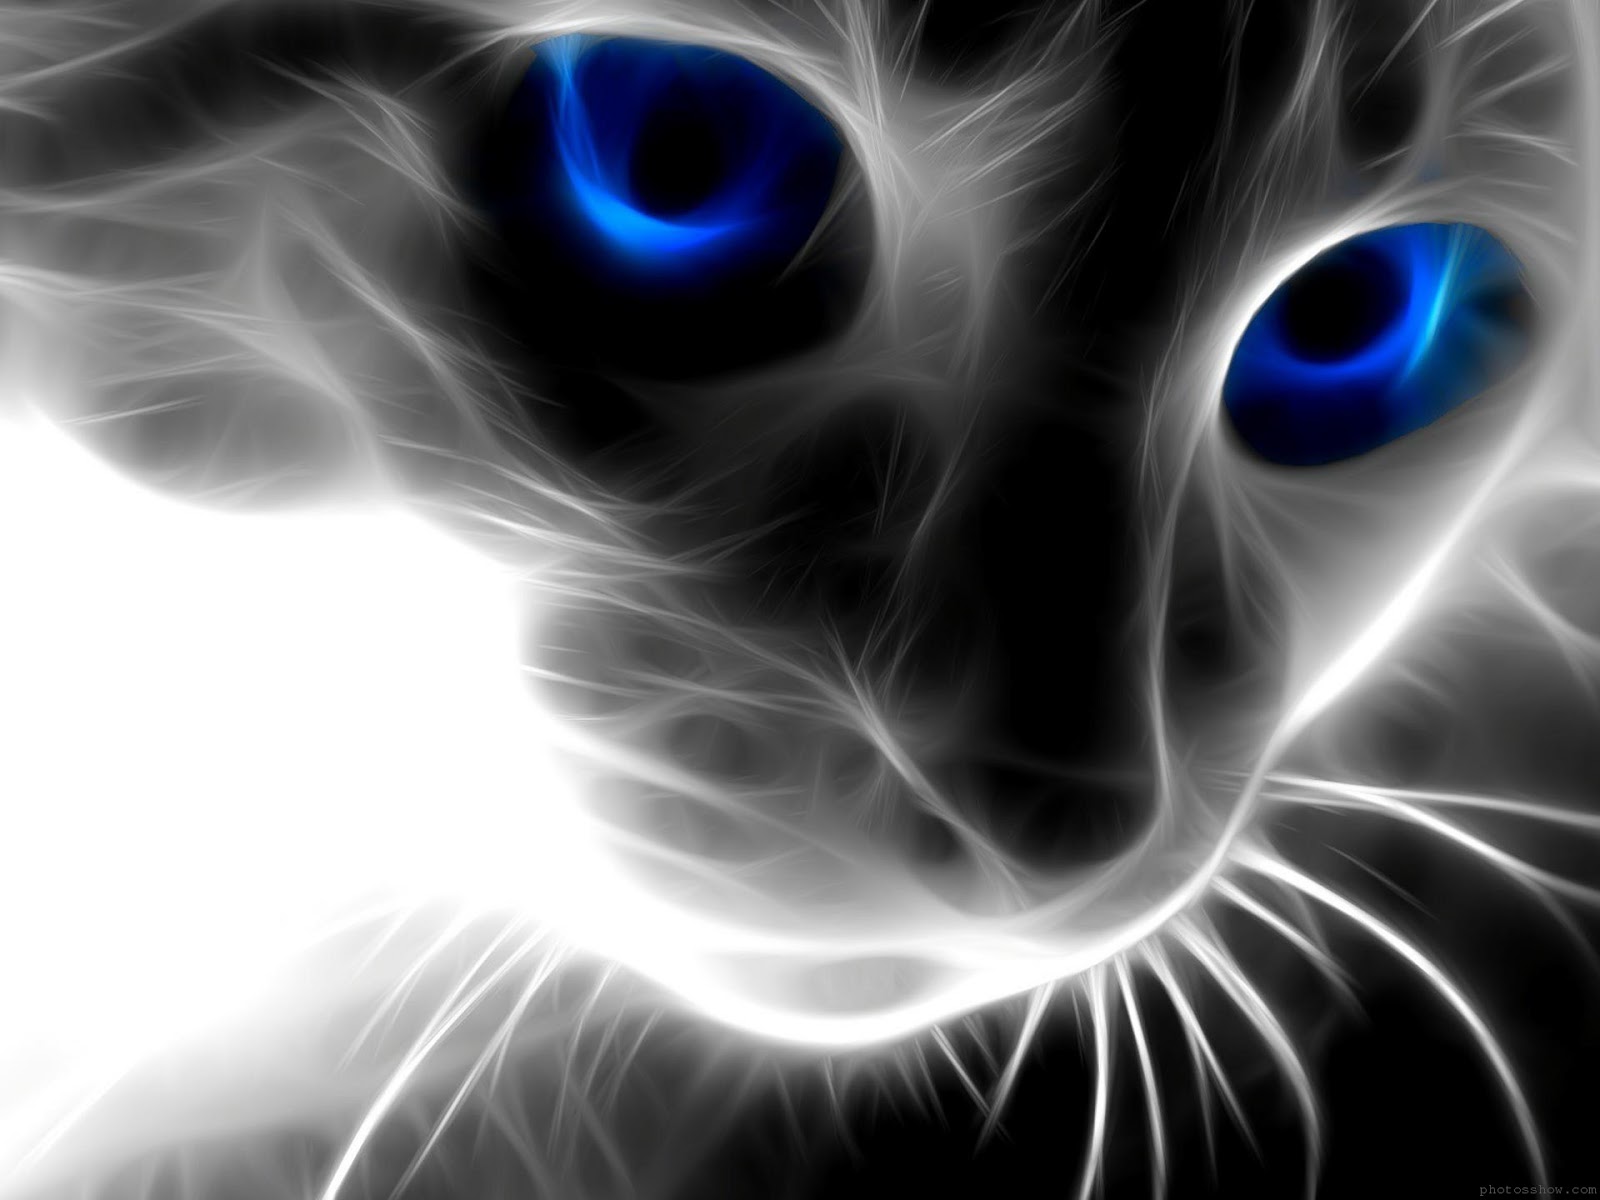 Black cat with blue eyes hd wallpaper 1080 1080 hd wallpapersjpg 1600x1200